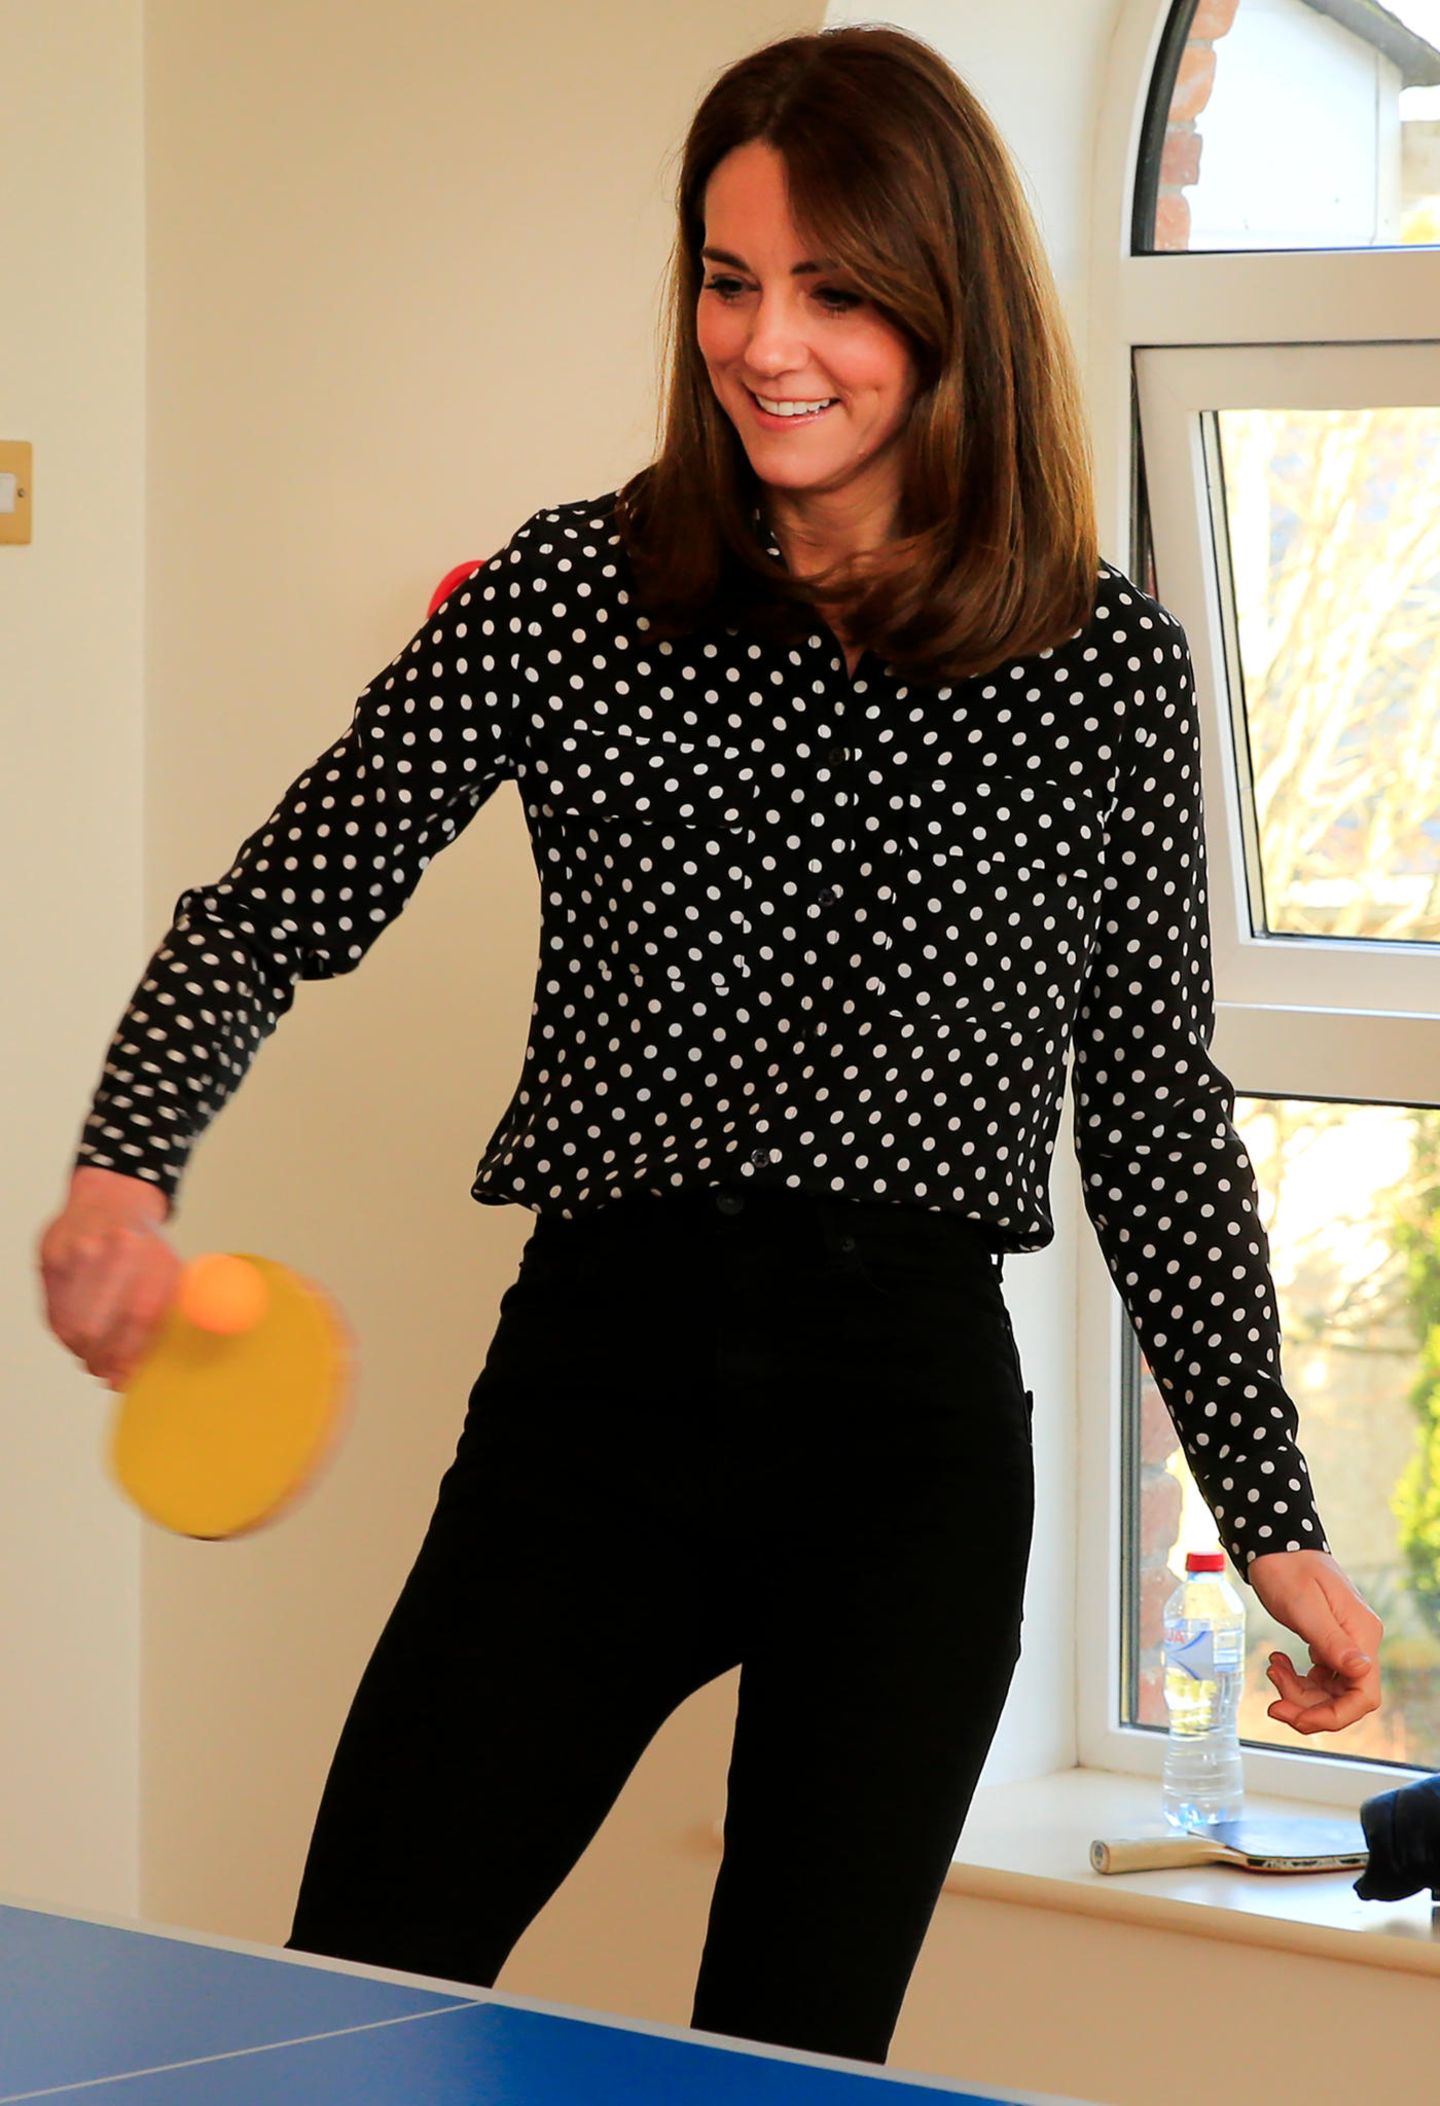 ... spannende Tischtennis-Matches. Schön, dass Kate für jeden Spaß zu haben ist.